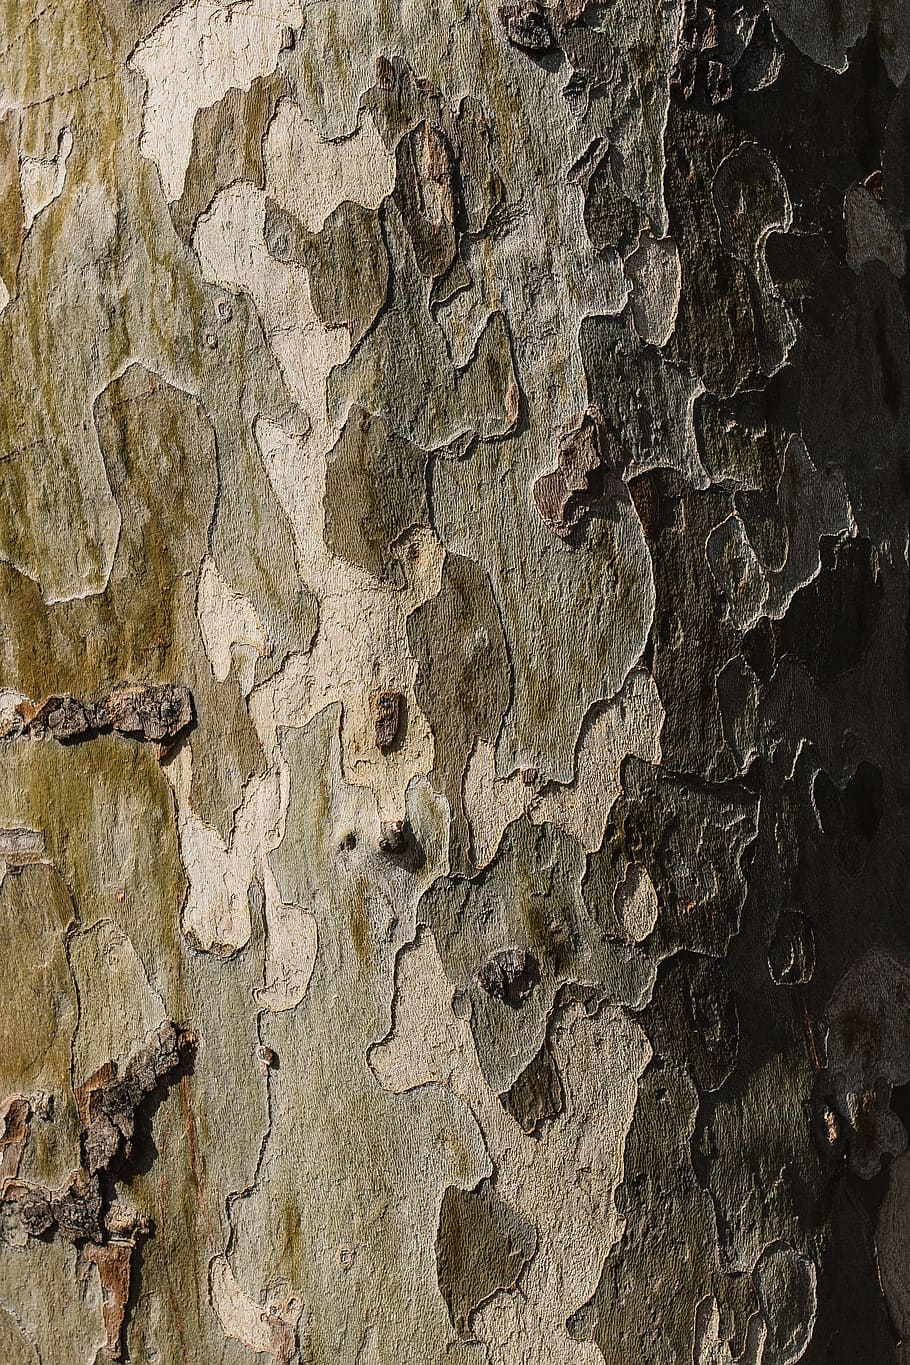 naturaleza, madera, marrón, corteza, tronco, fuerte, sólido, duro, árbol, troncos